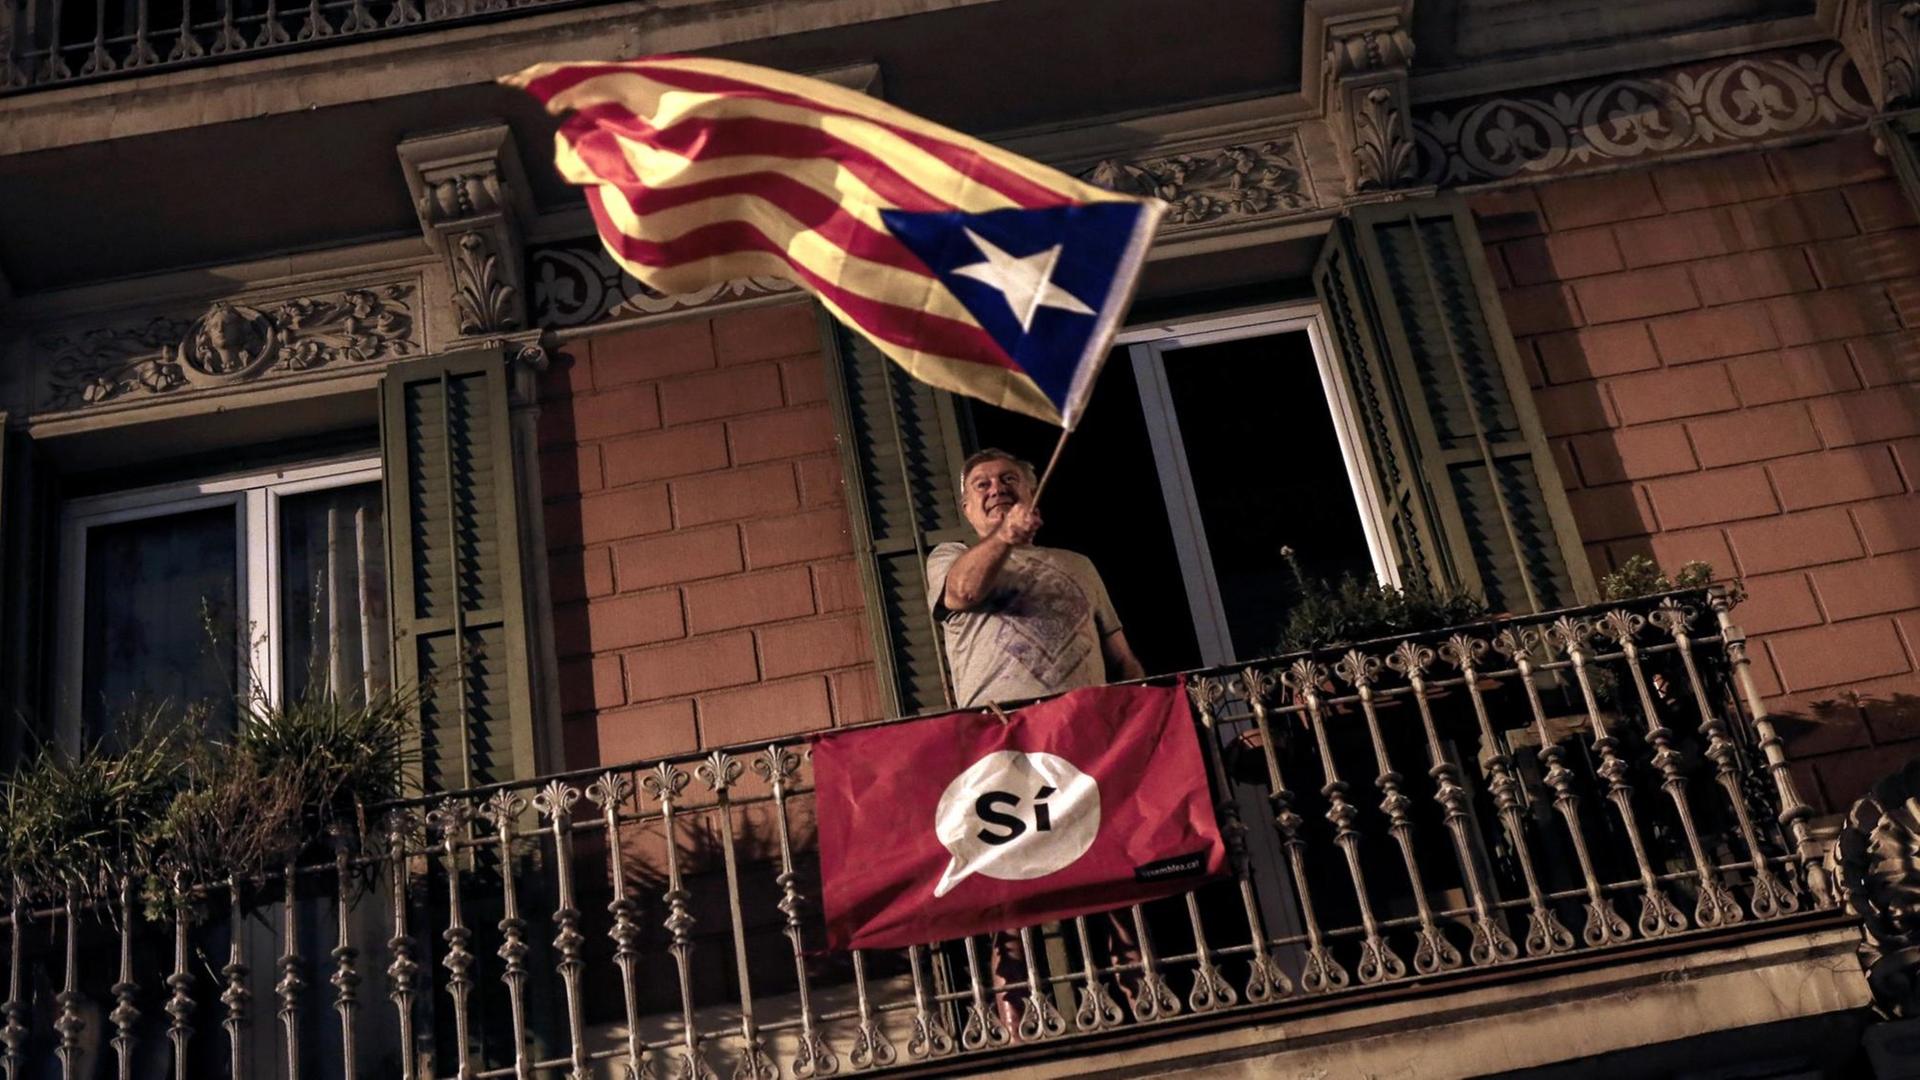 Ein Mann schwenkt die katalanische "Estelada"-Flagge, ein Symbol für die Unabhängigkeit der Region.